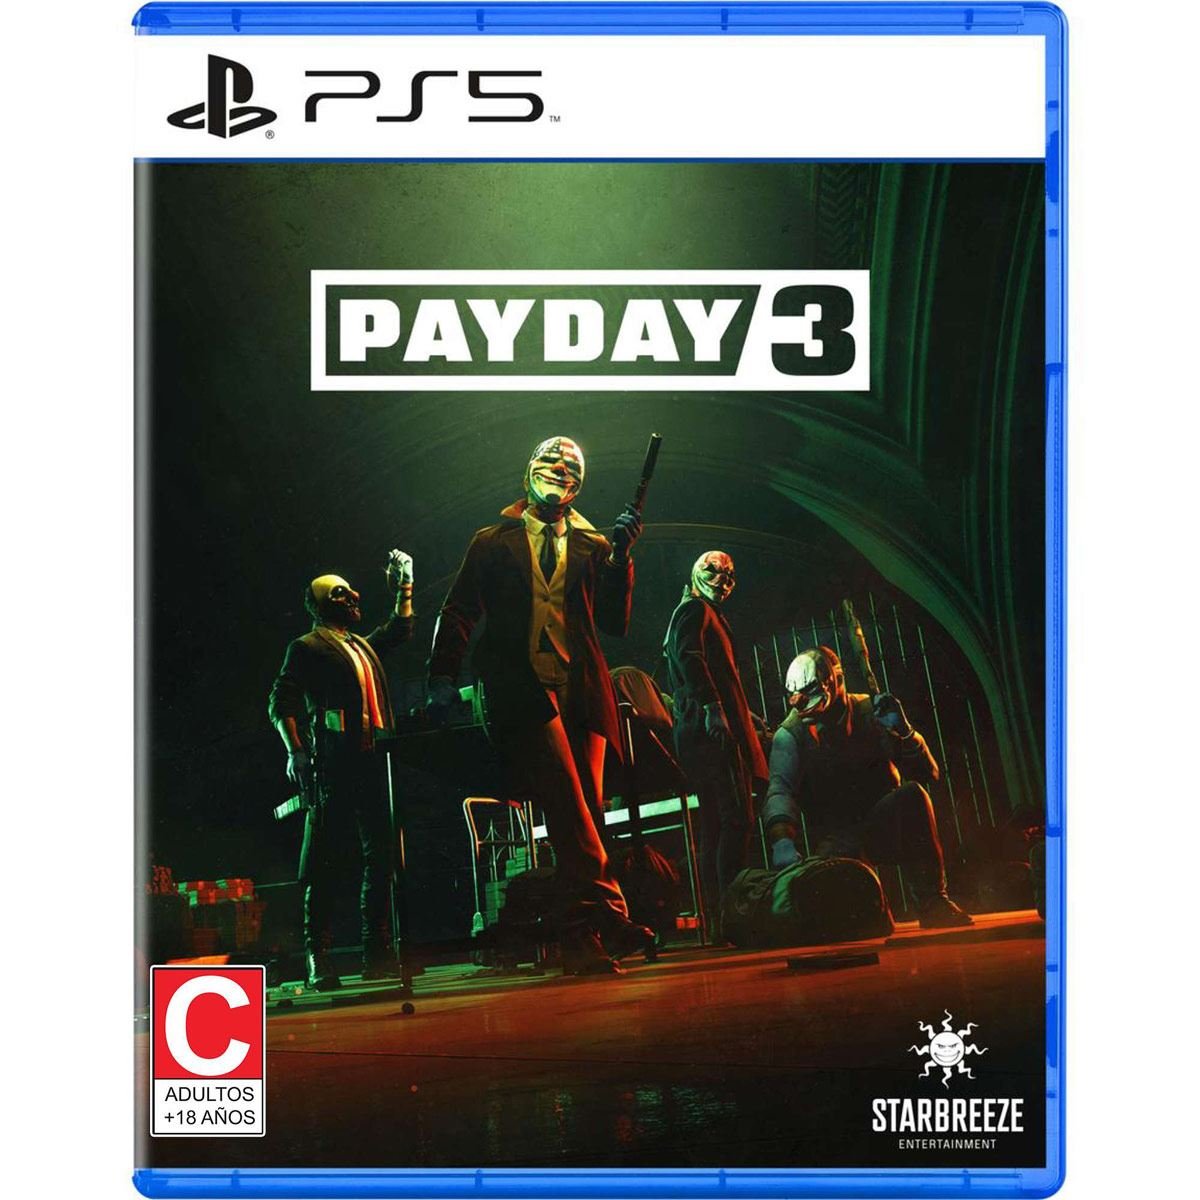 Payday 3 confirma nuevos detalles tras enseñar su primer gameplay: precio,  DLCs, crossplay y más